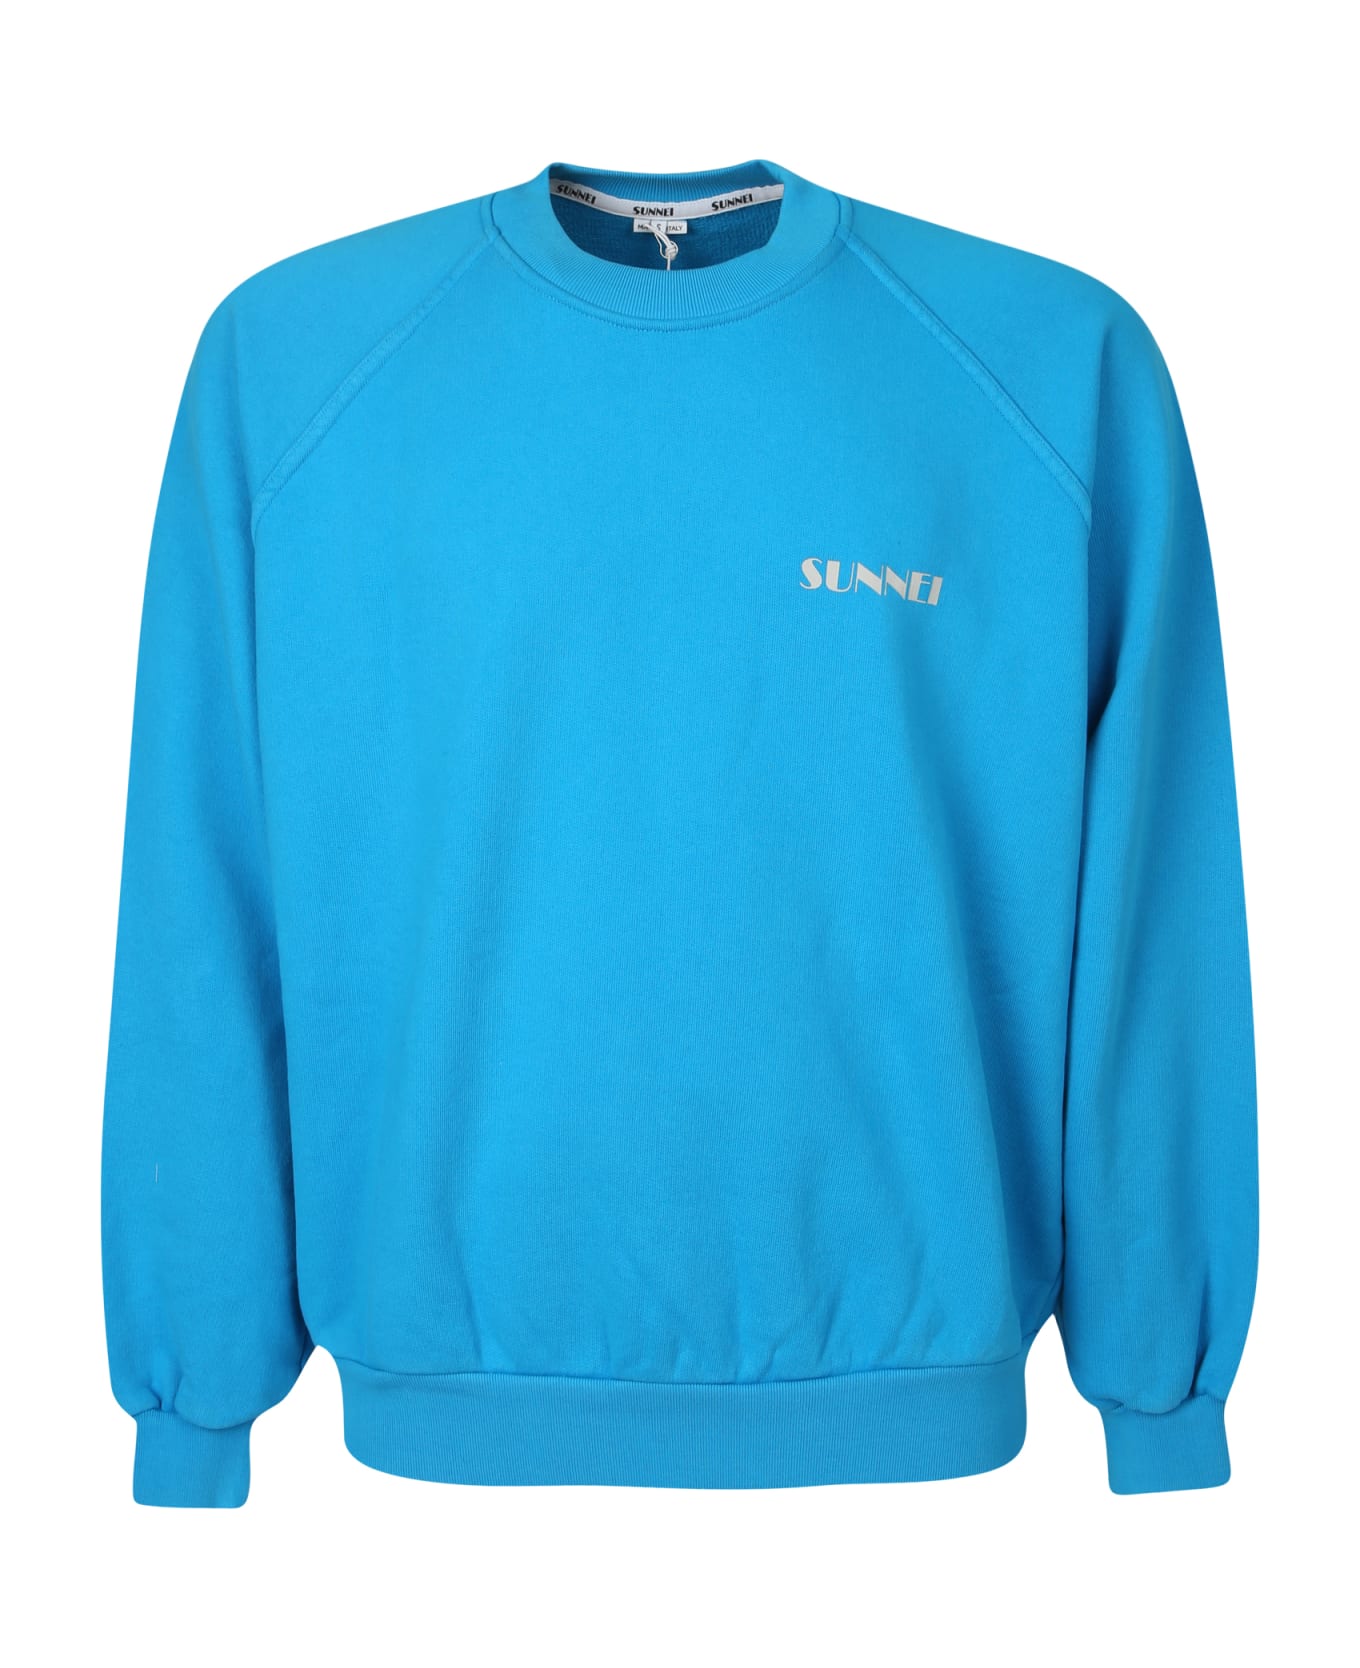 Sunnei Logo Print Round Neck Sweatshirt - Blue